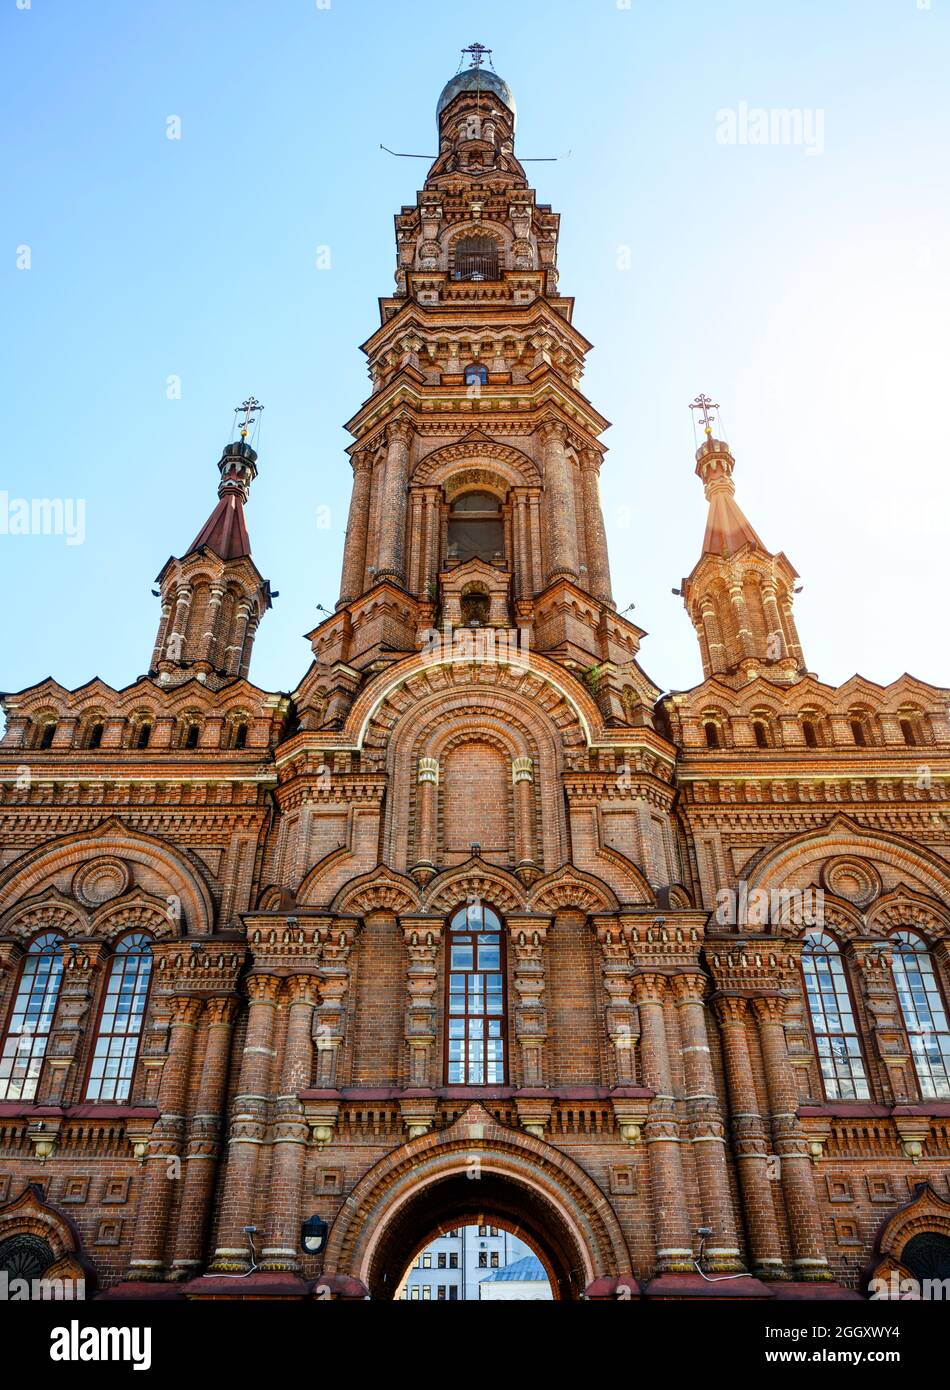 Clocher de la cathédrale d'Epiphany à Kazan, Tatarstan, Russie. Ce grand beffroi est une attraction touristique de Kazan. Vue verticale de l'ancien magnifique monument Banque D'Images